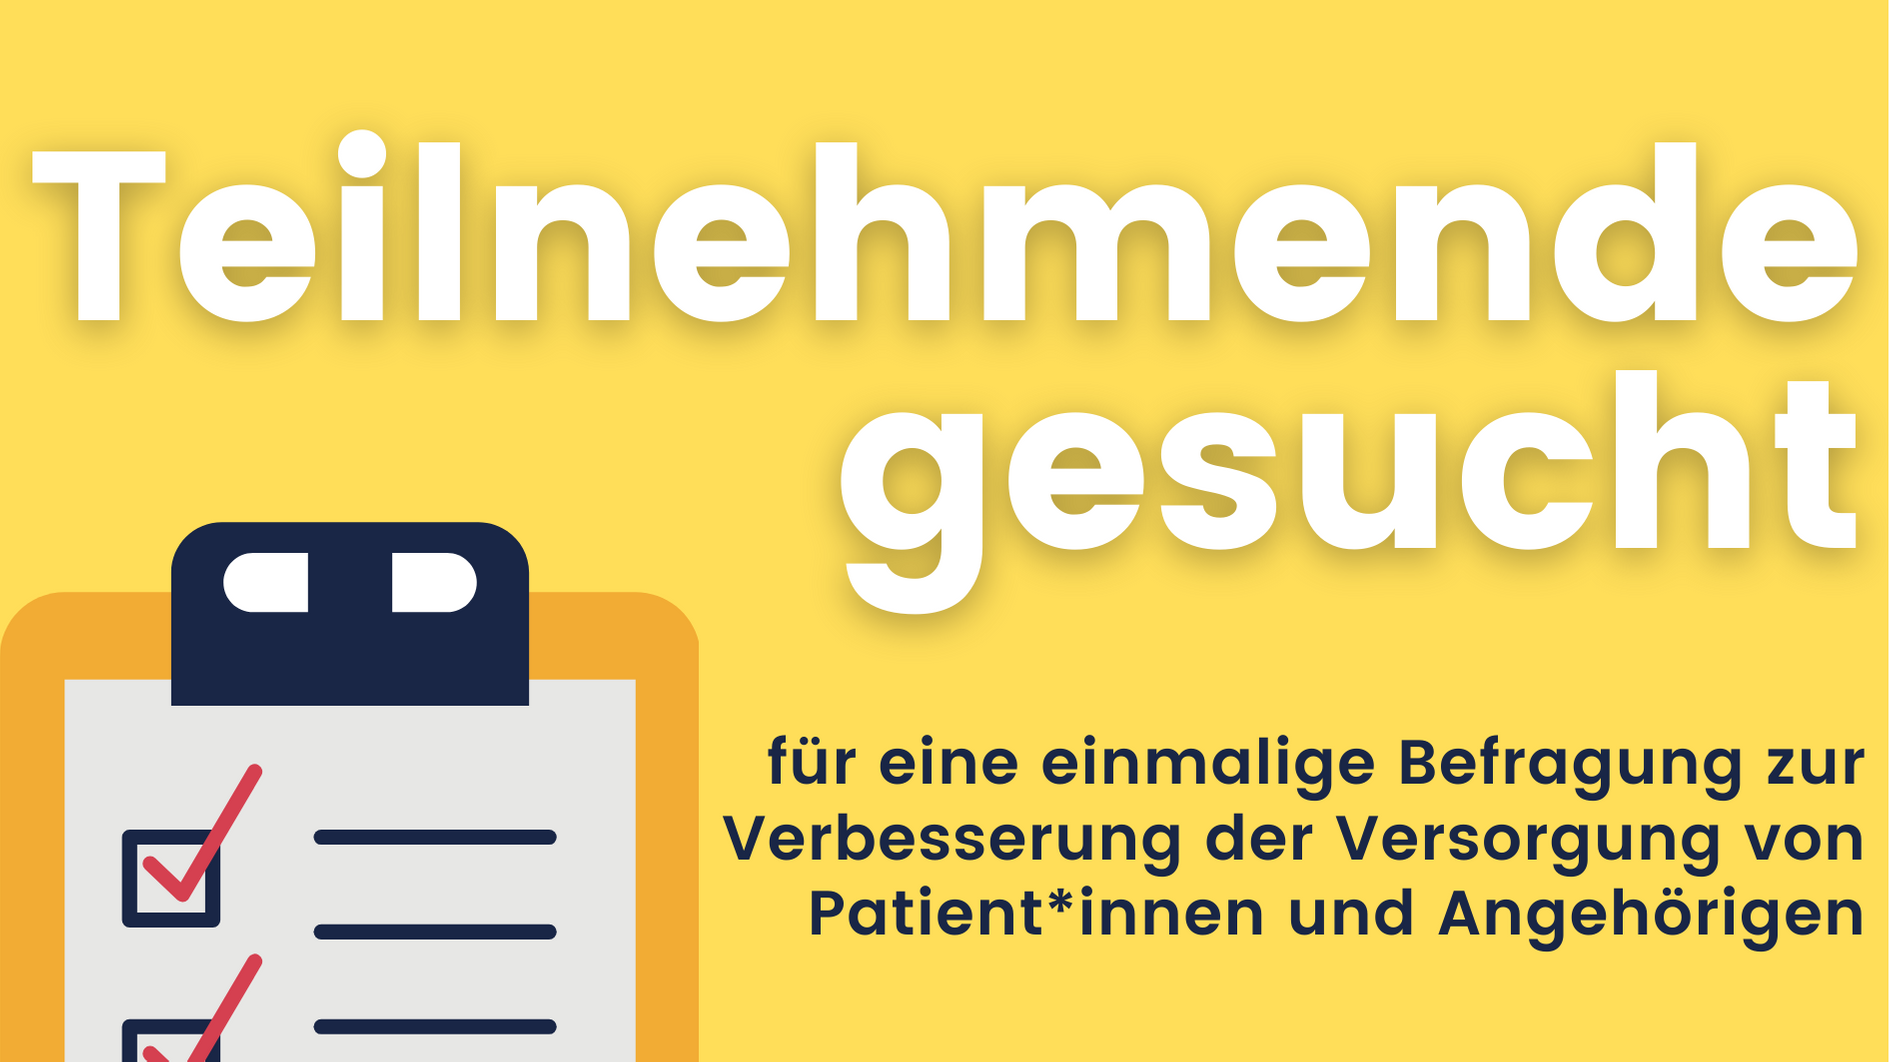 Neben einem Fragebogenausschnitt steht der Text „Teilnehmende gesucht für eine einmalige Befragung zur Verbesserung der Versorgung von Patient*innen und Angehörigen.“